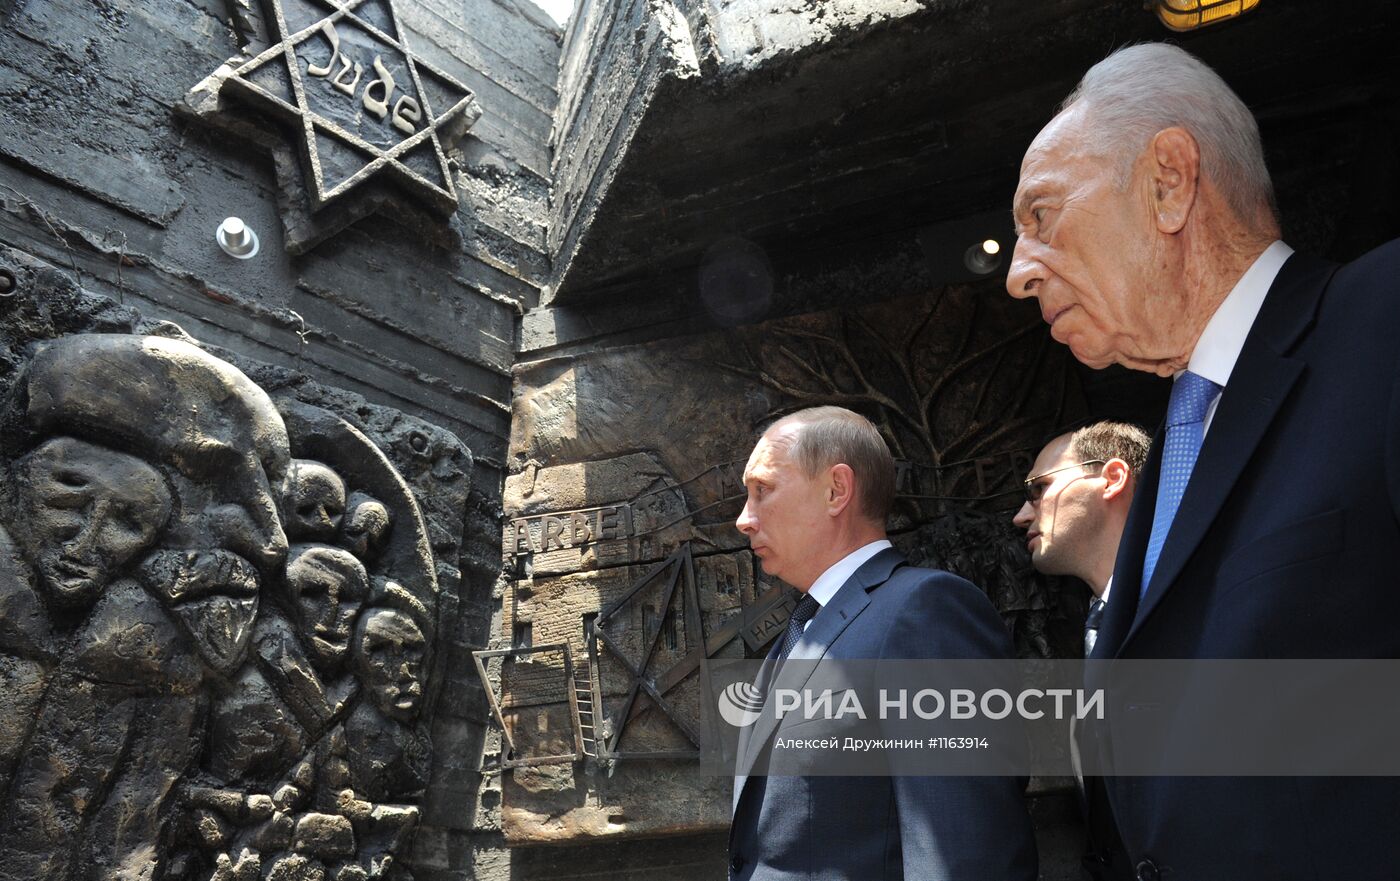 Рабочий визит президента РФ В.Путина в Израиль